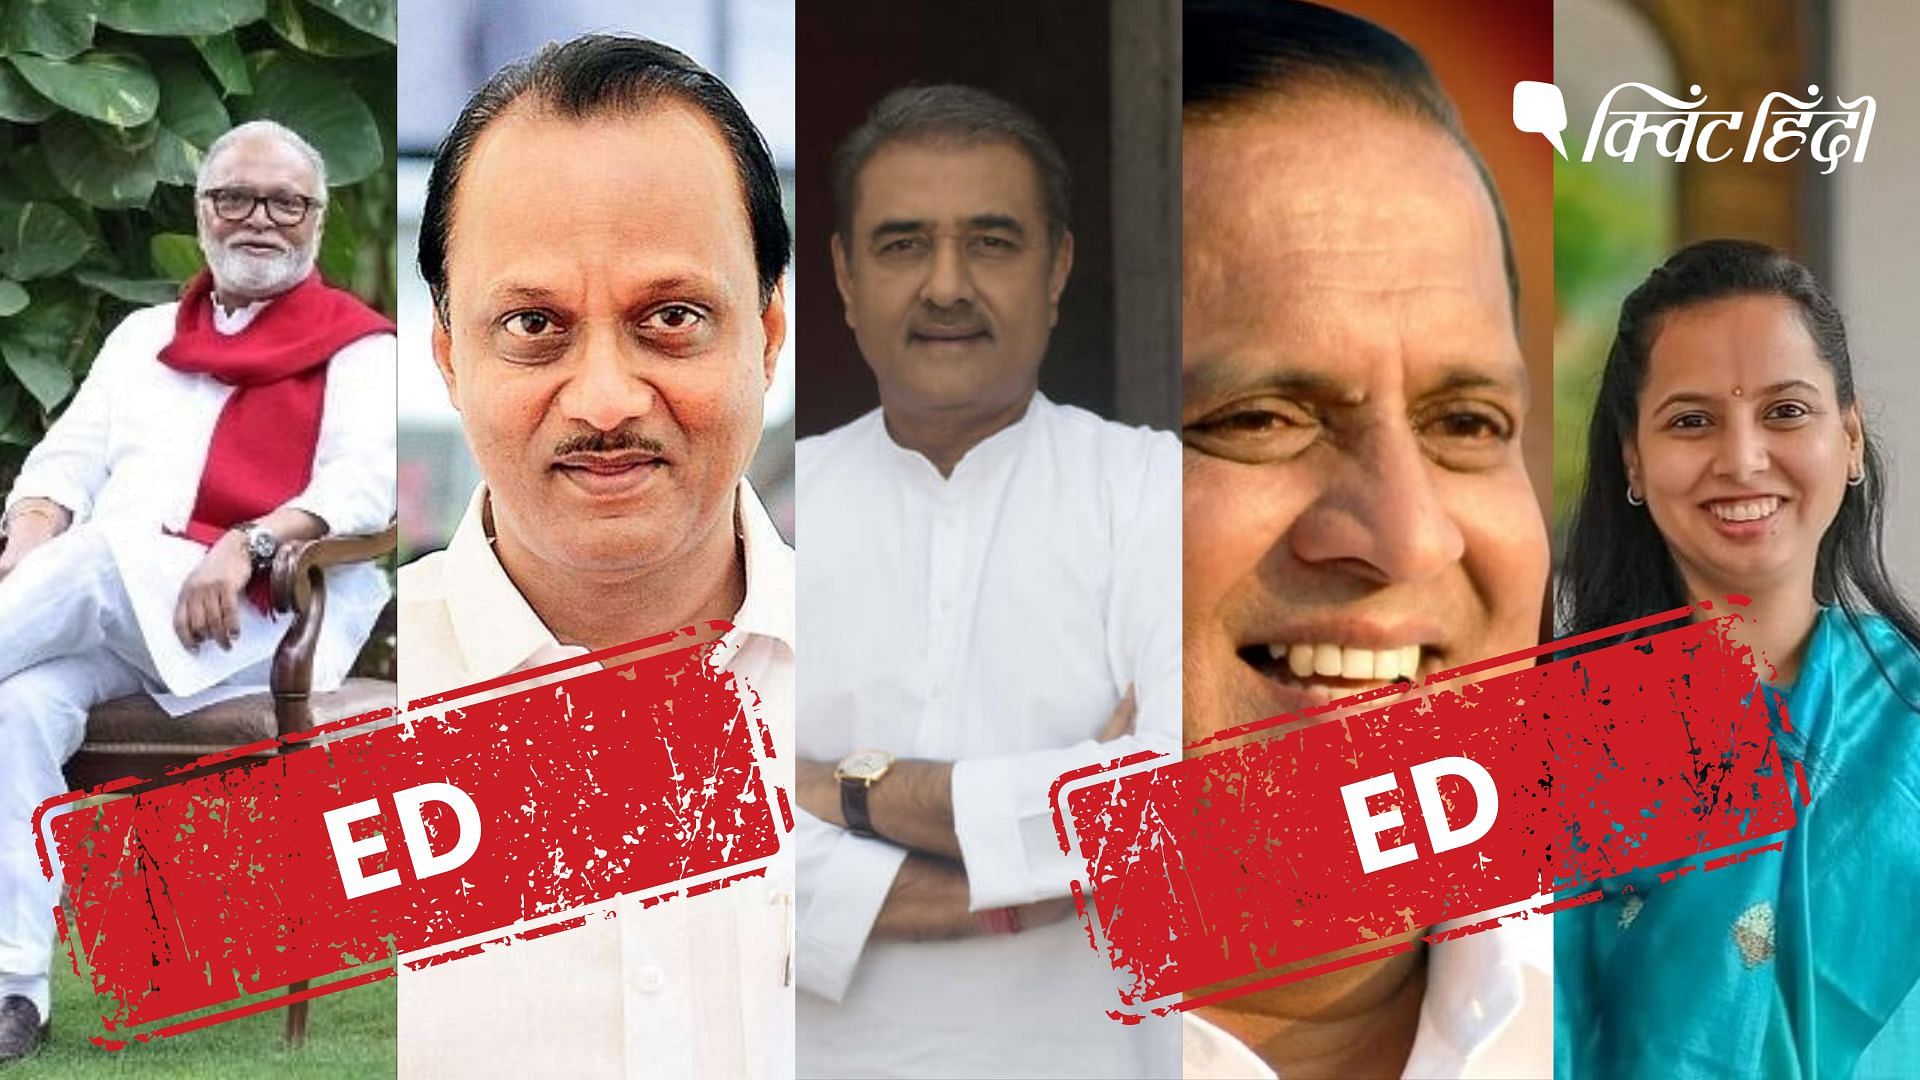 <div class="paragraphs"><p>महाराष्ट्र सरकार में शामिल हुए पवार समेत NCP के चार नेता जिनके पीछे ED का शिकंजा</p></div>